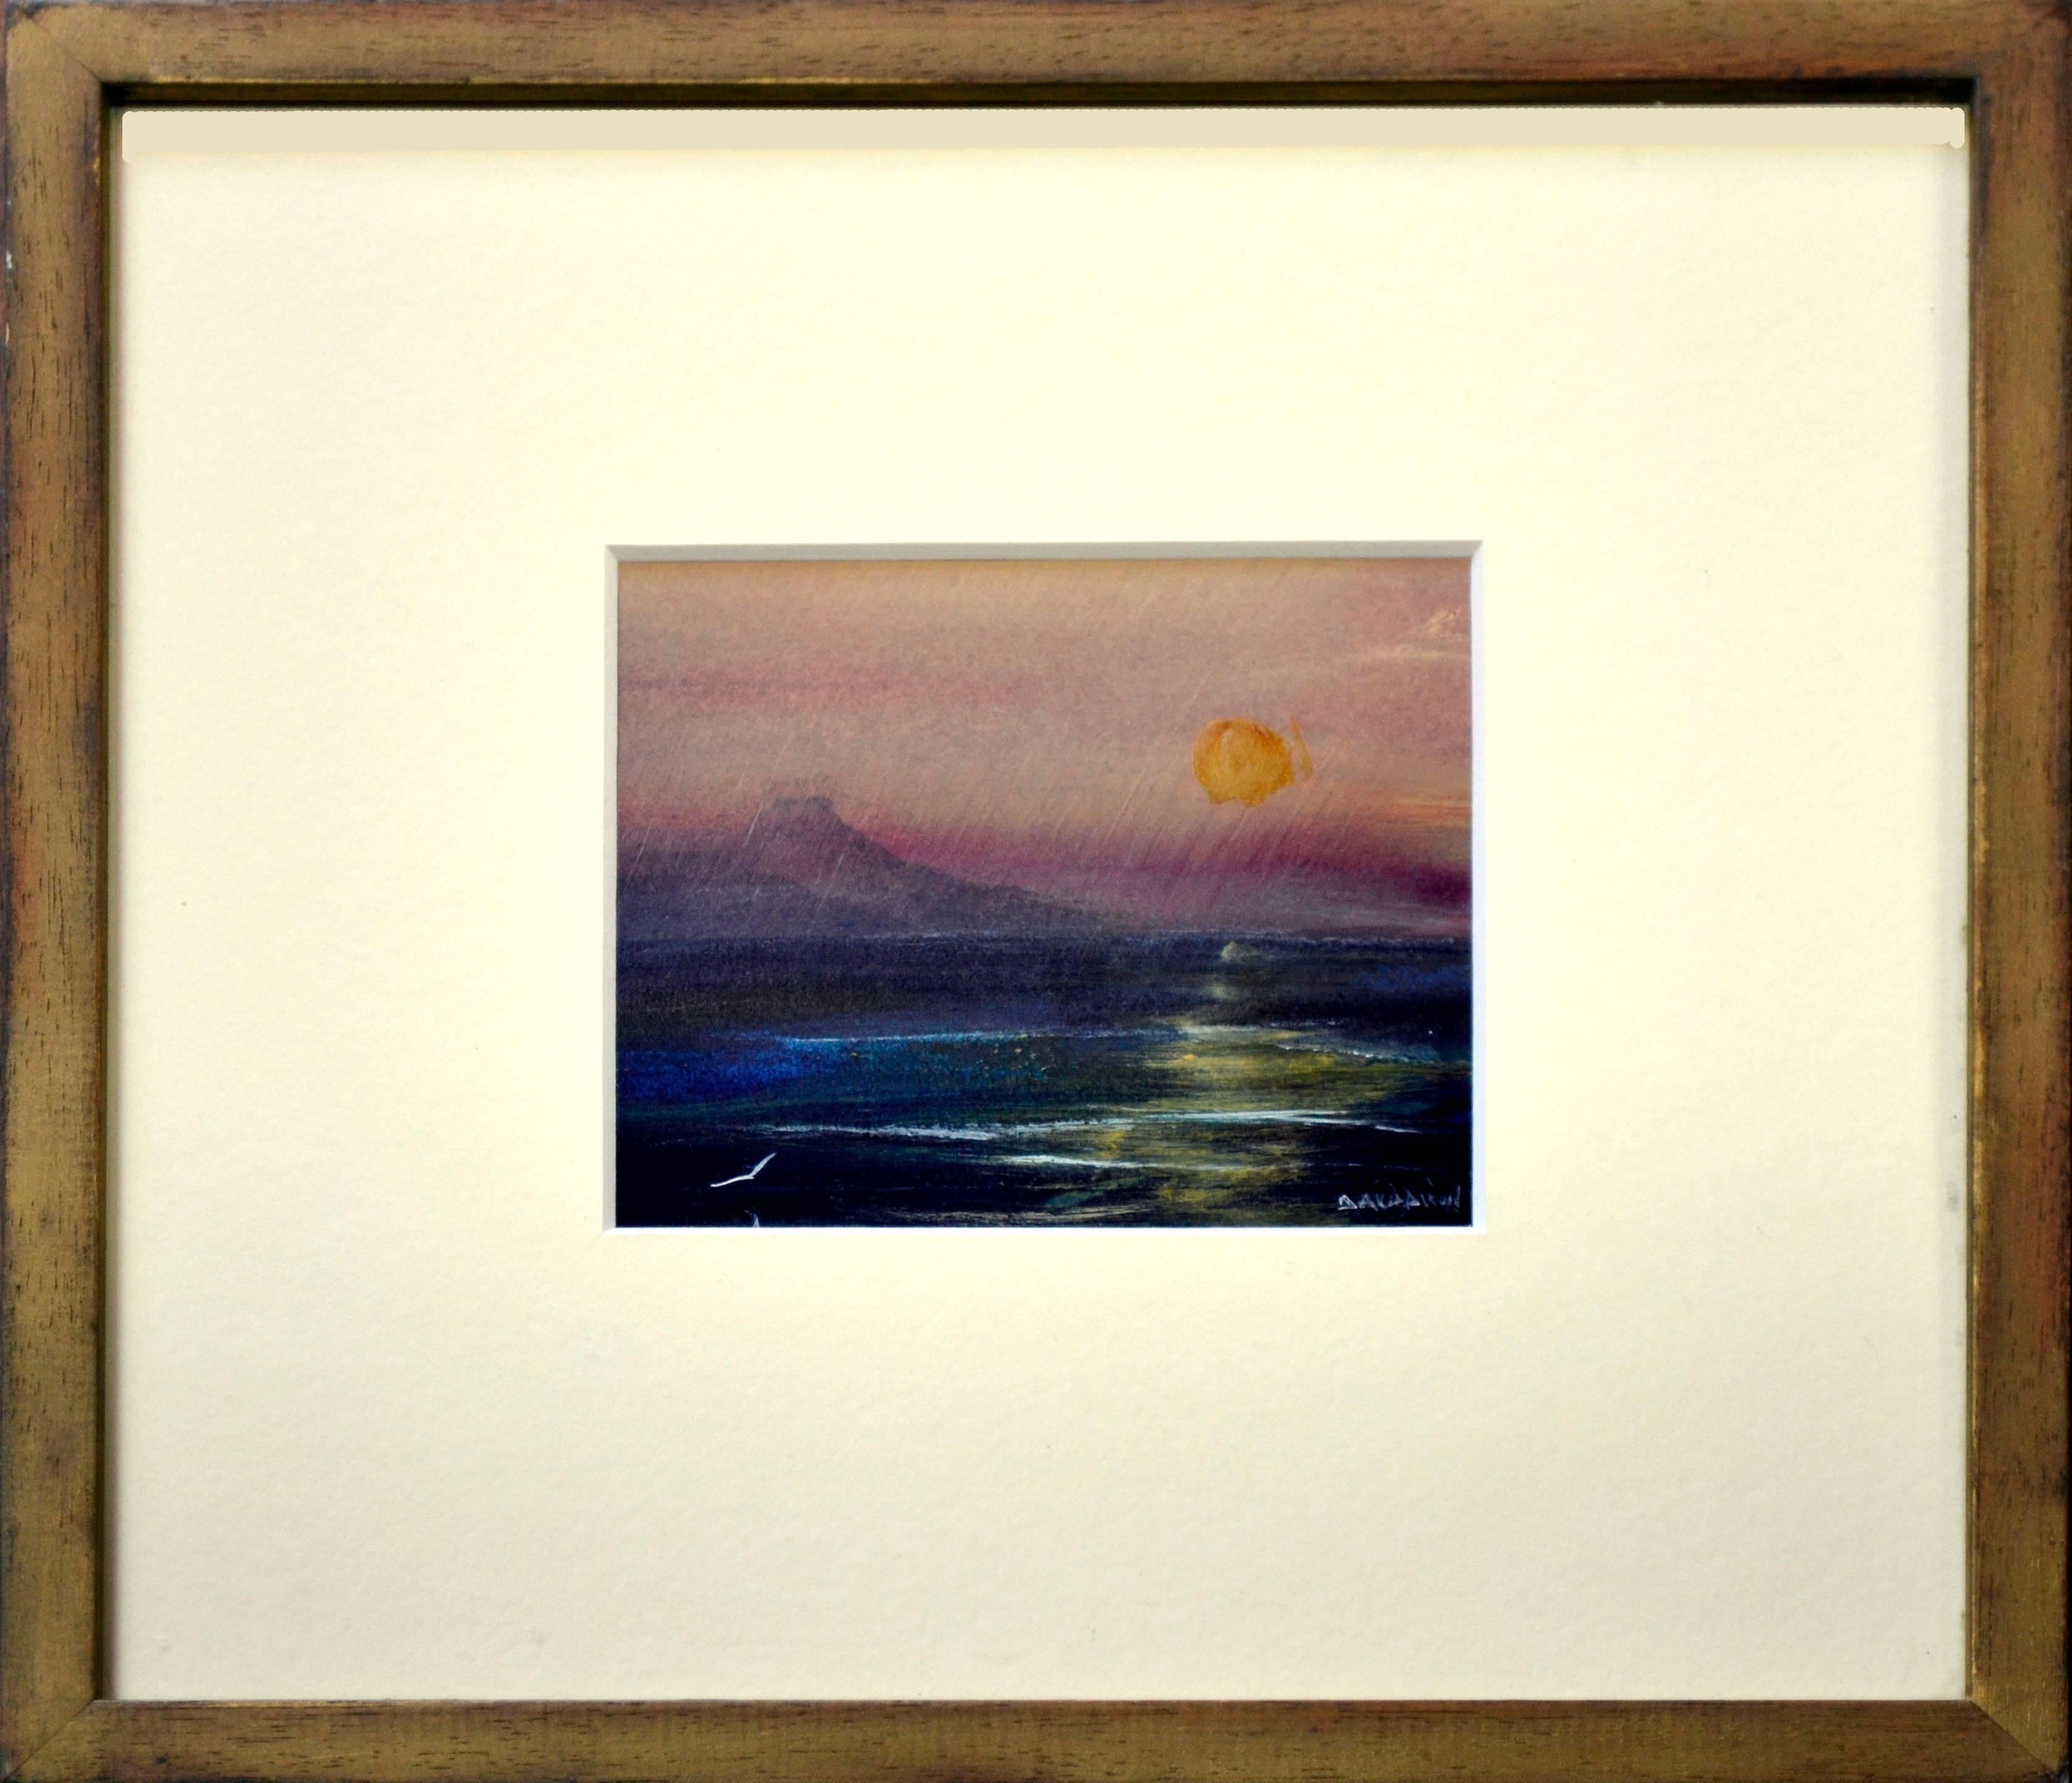 David Dixon  Landscape Painting - Newgale, Pembrokeshire, Wales - Sunset Seascape 